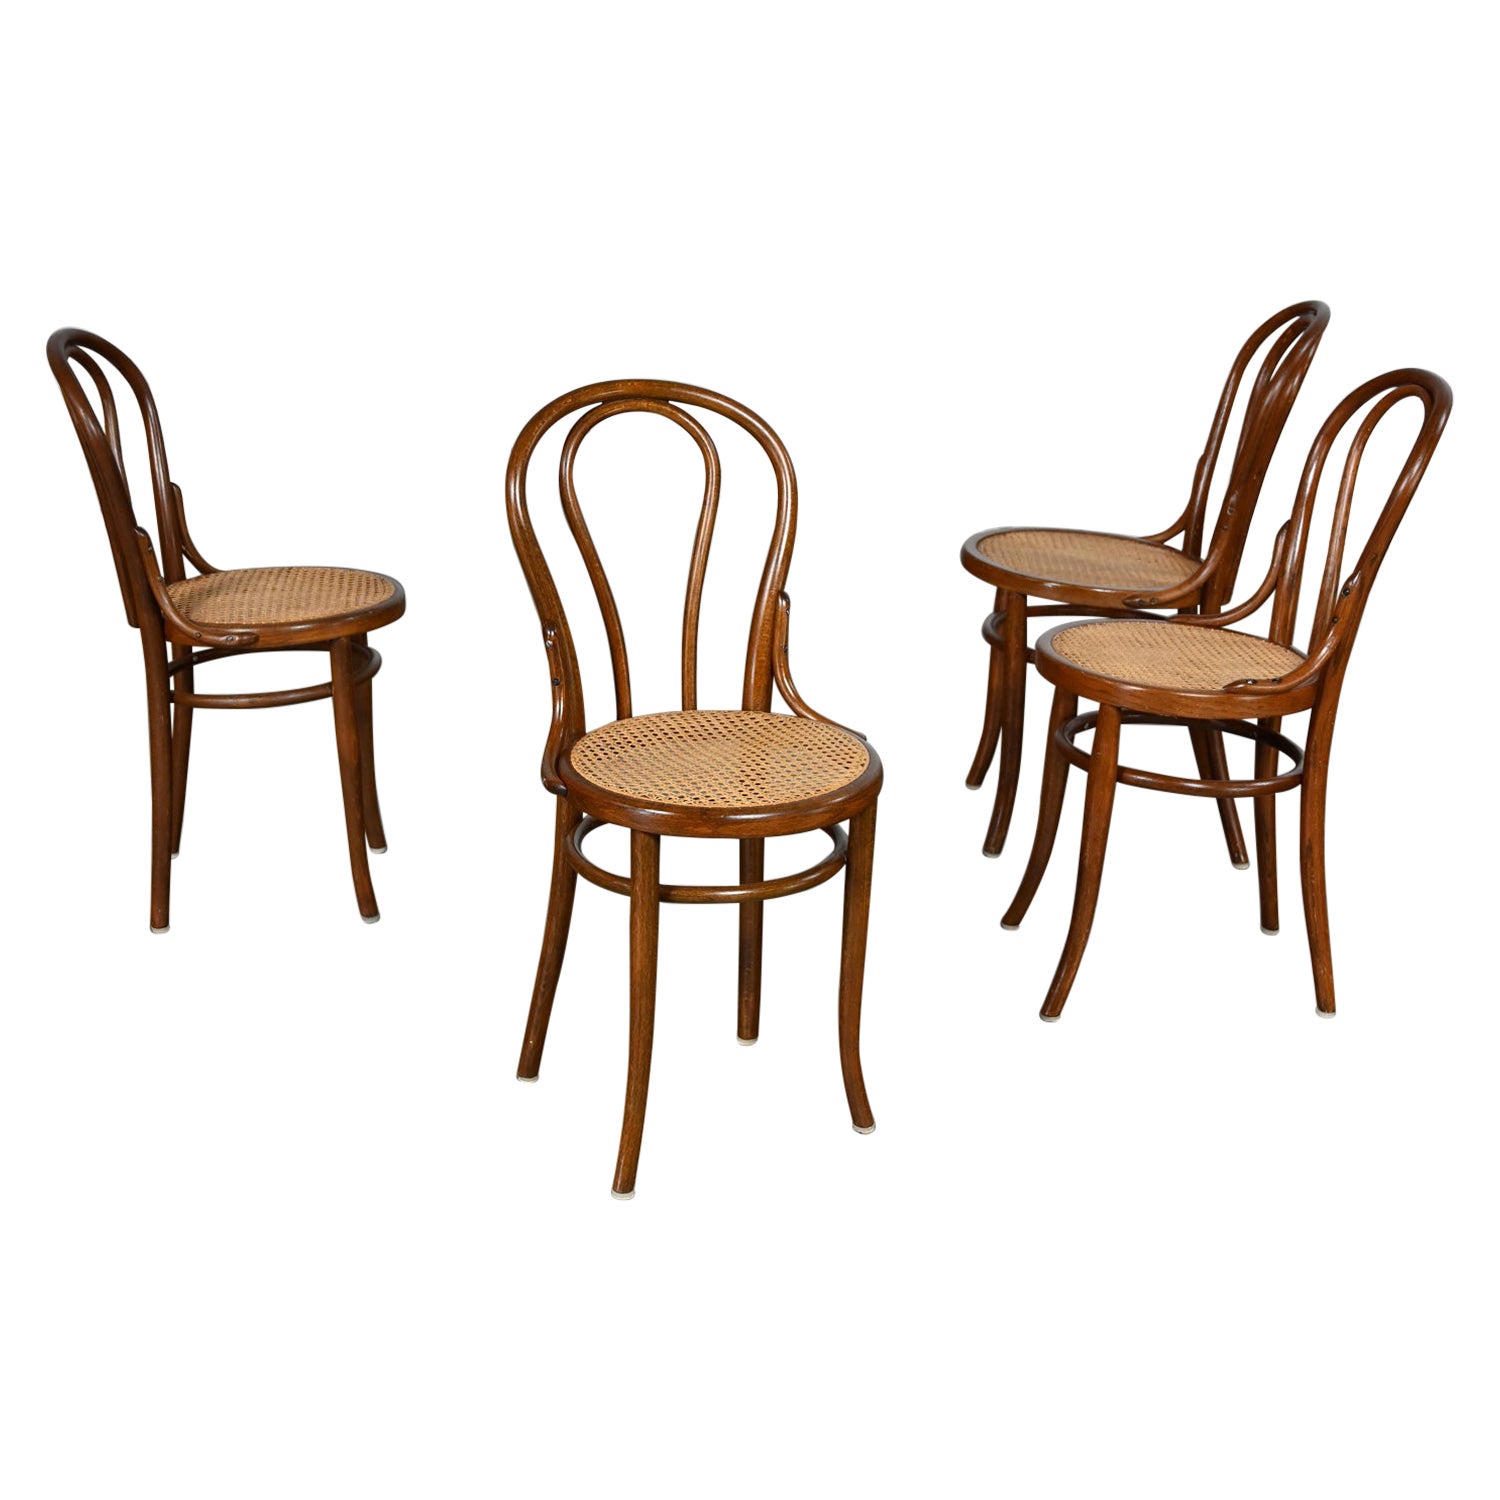 Ensemble de 4 chaises de caf�é #18 de style Bauhaus par Thonet Structure en bois breton et sièges cannés à la main